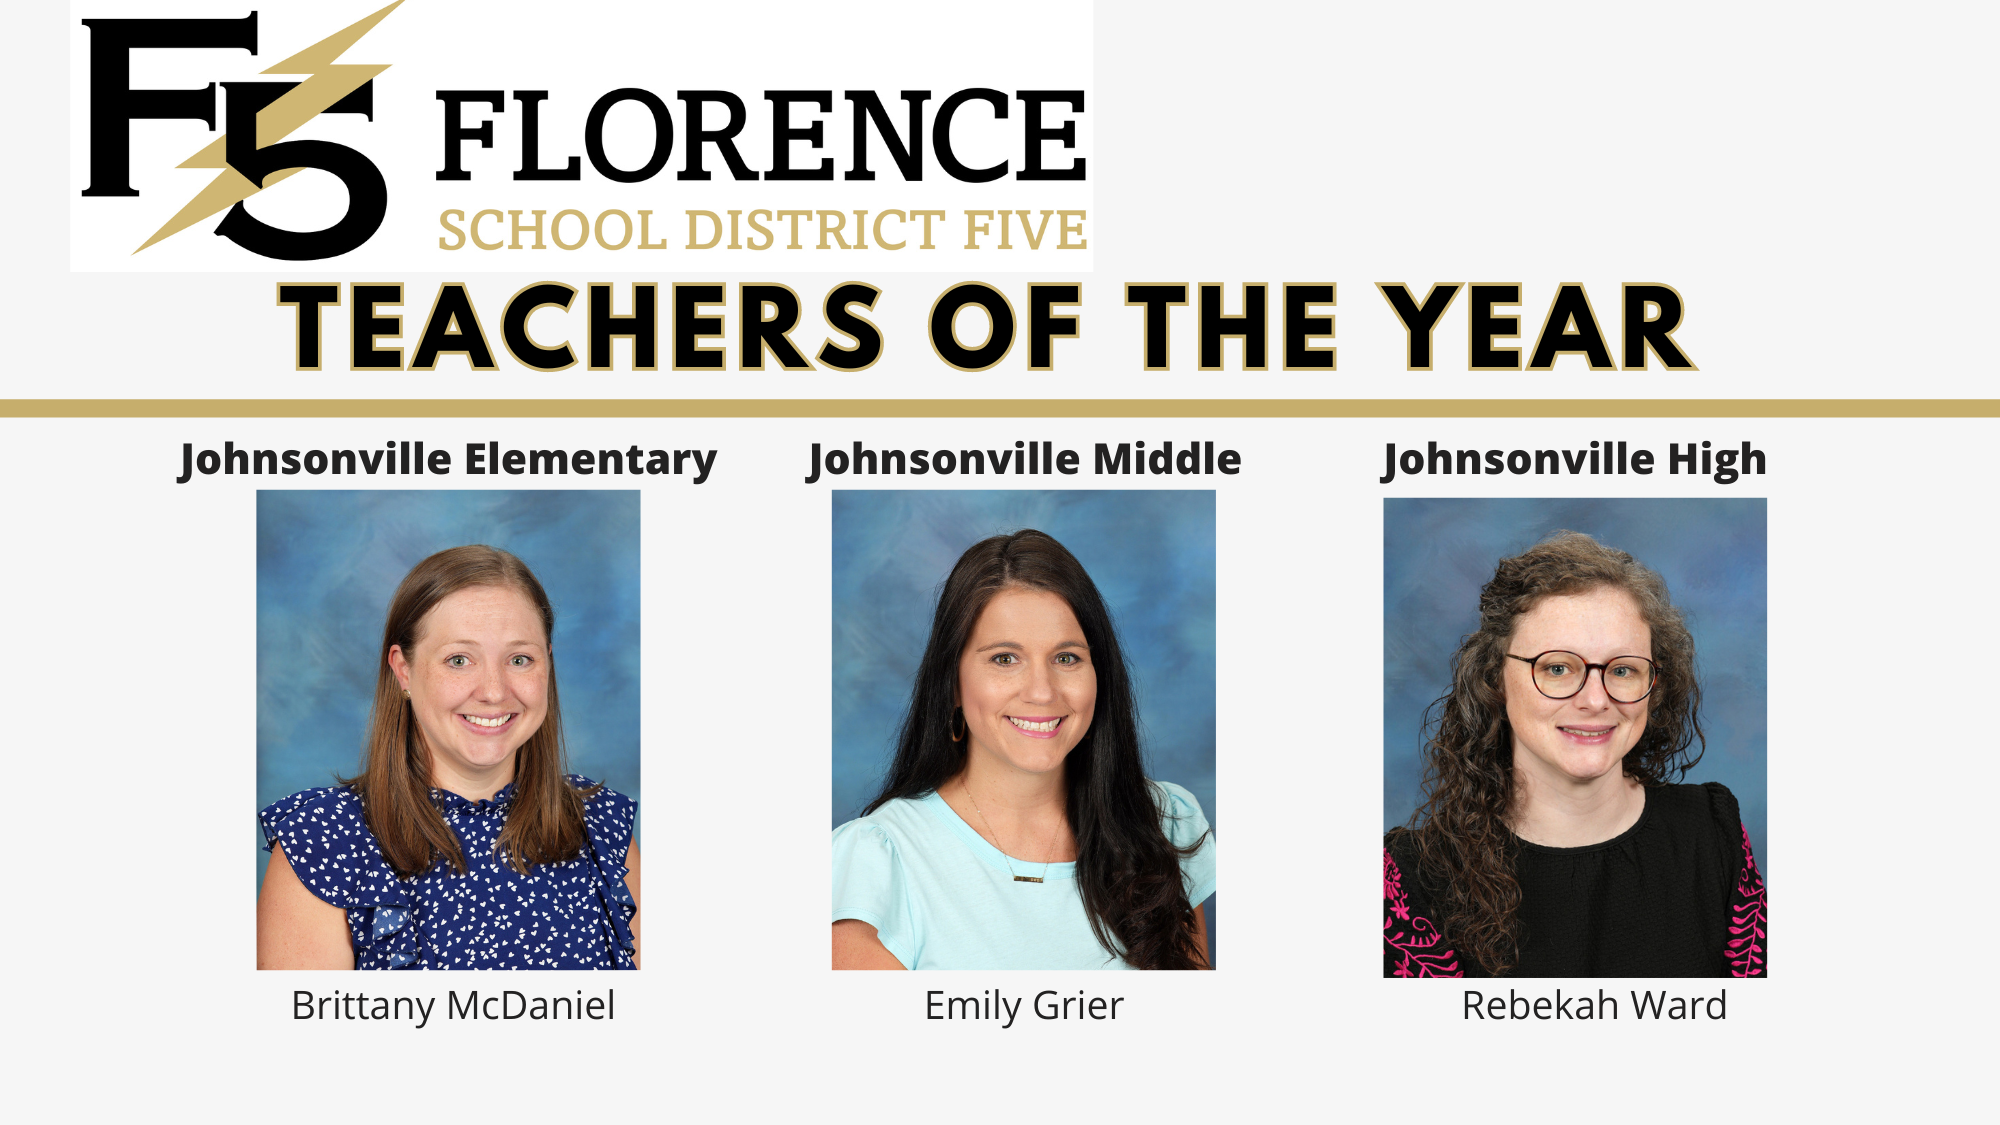 Teachers of the Year: McDaniel, Grier, Ward